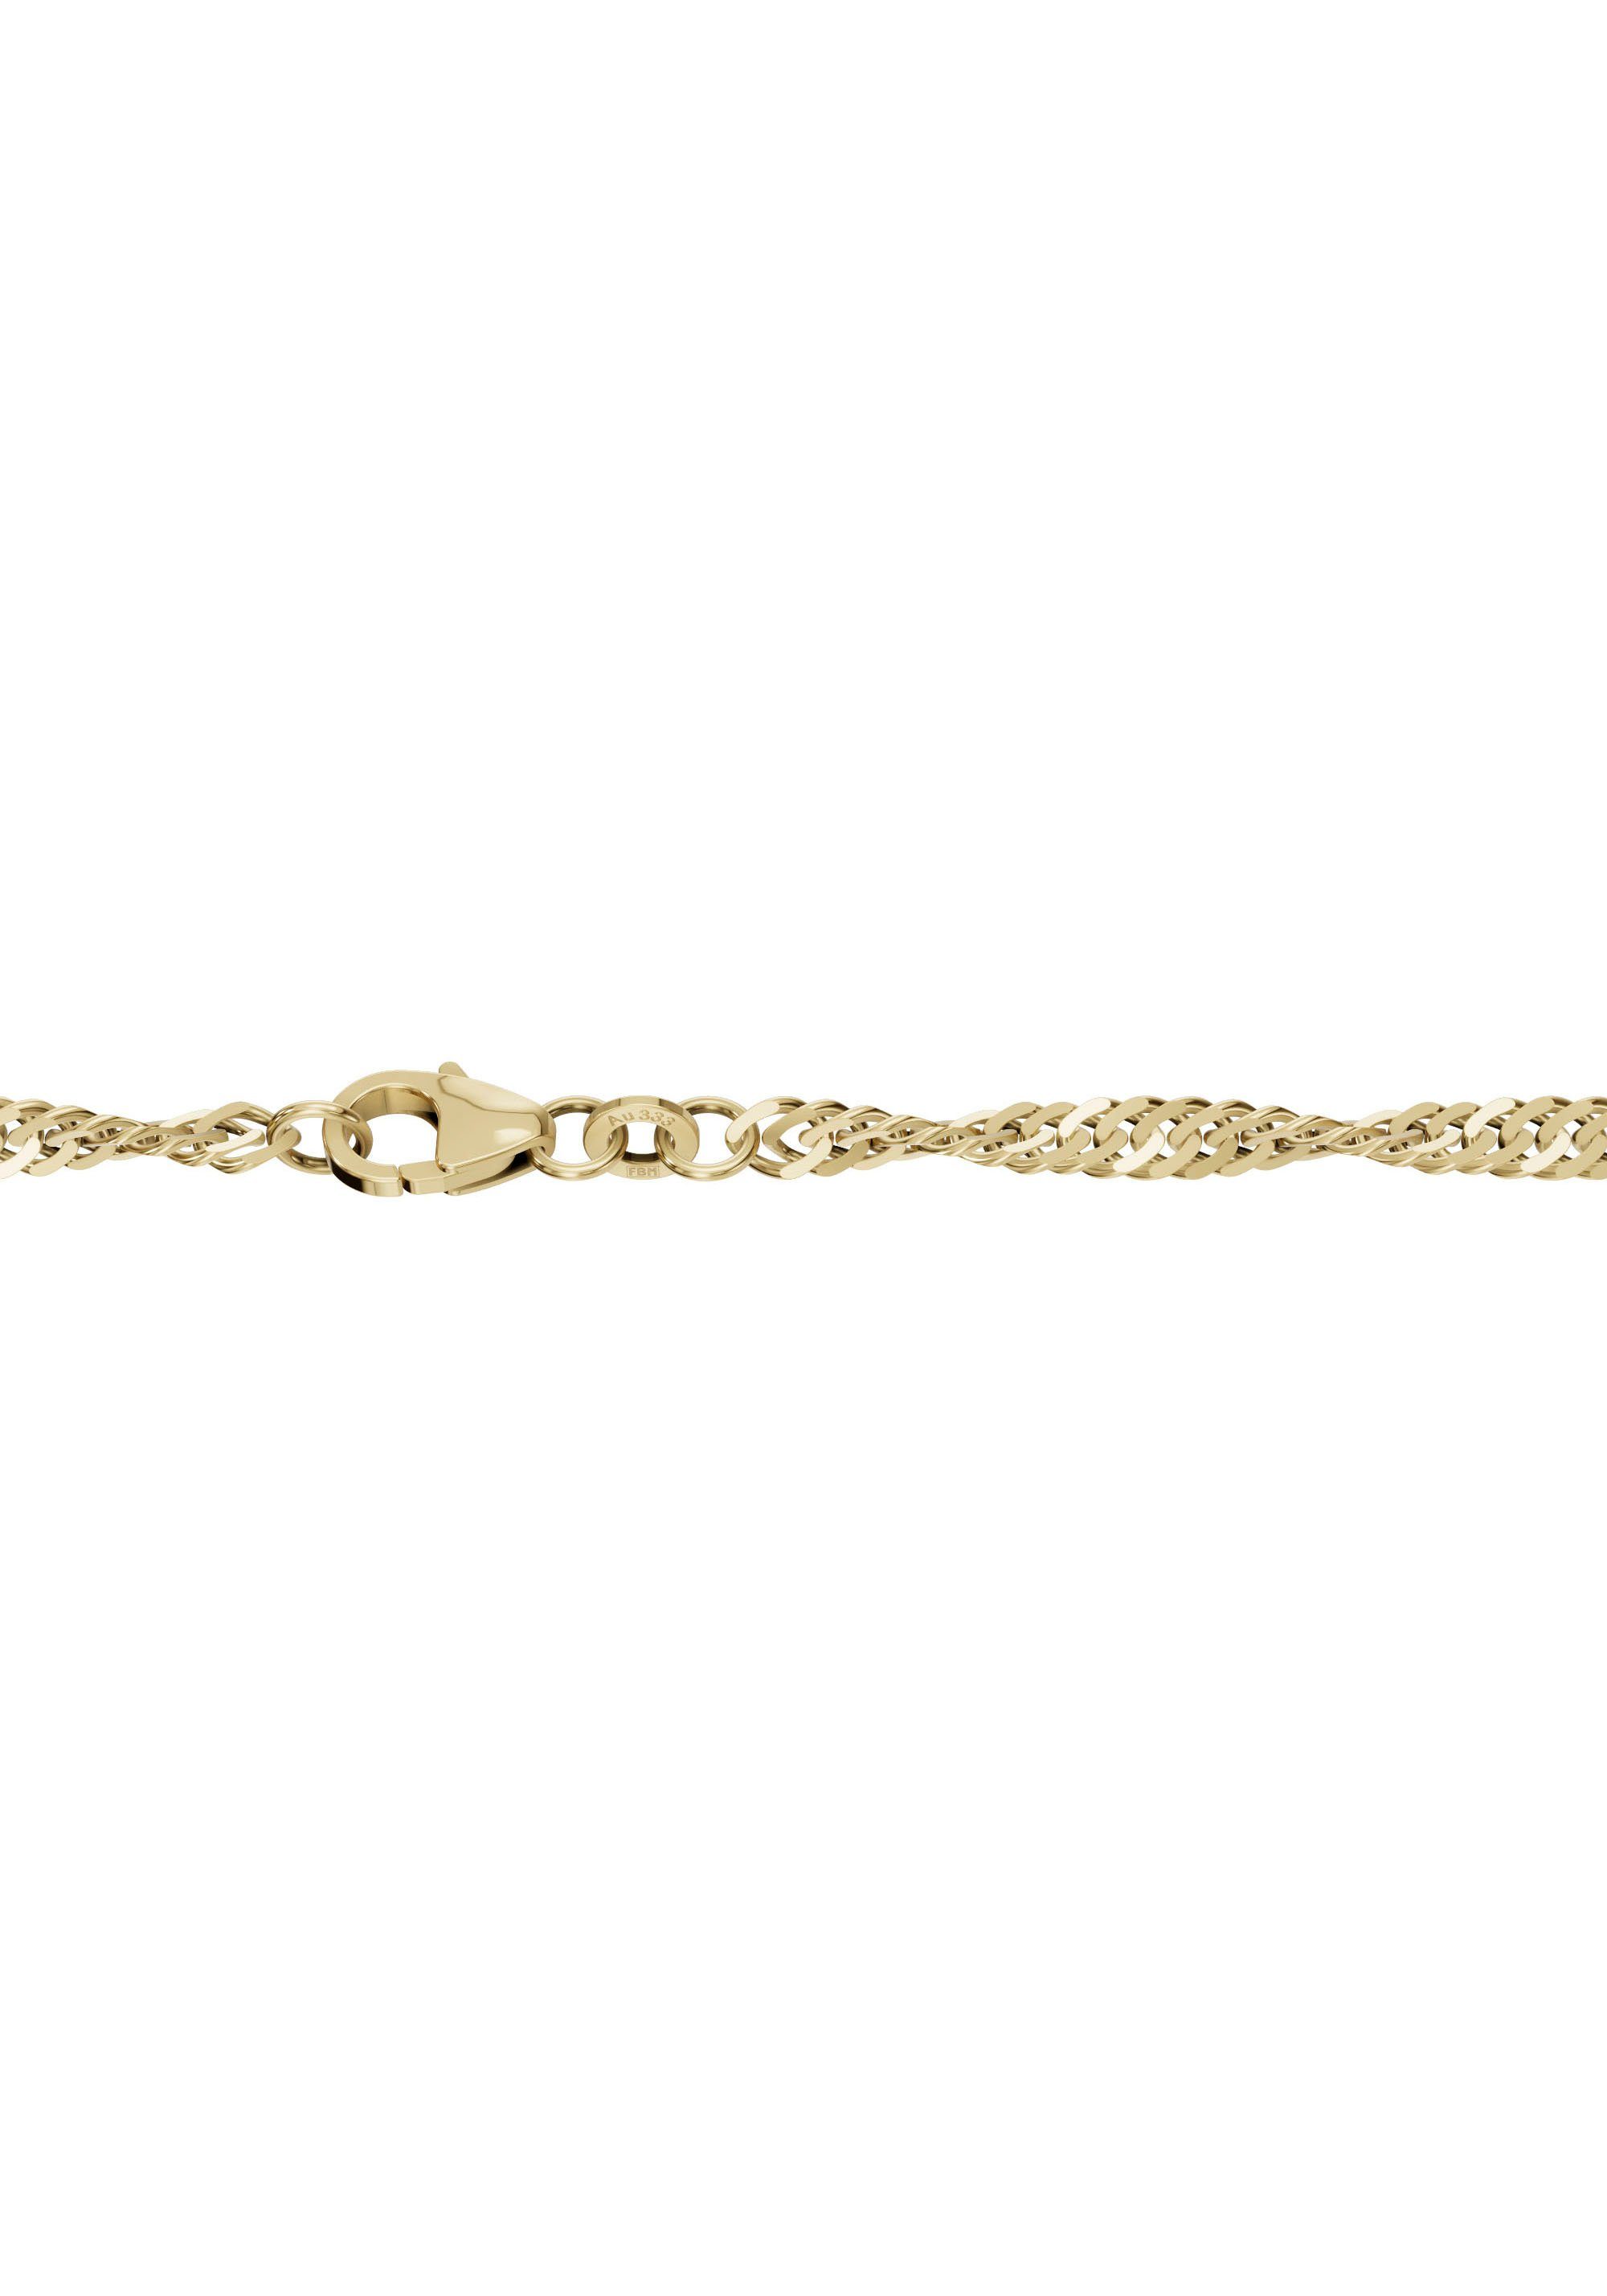 Made Schmuck Goldkette Geschenk 585 gelbgoldfarben Collier Germany in Gold Firetti Halsschmuck Halskette Singapur,